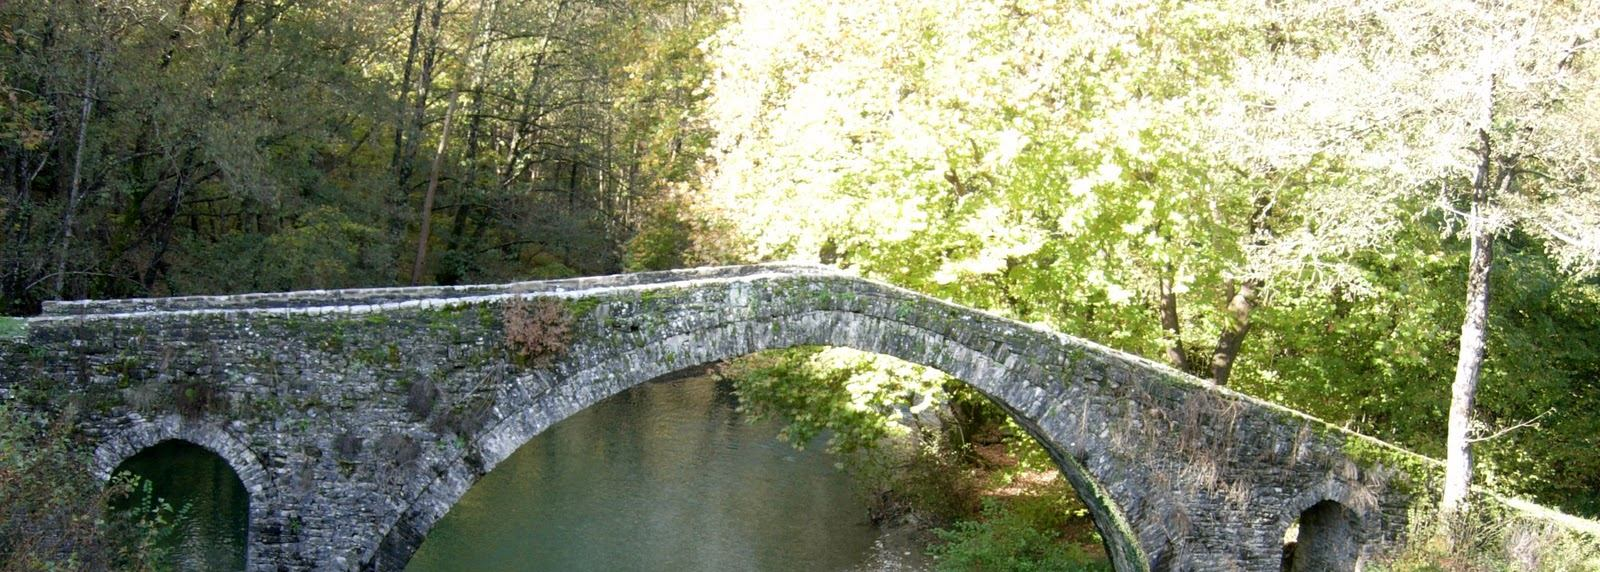 Το γεφύρι της Πλάκας Θεωρείται η ωραιότερη γέφυρα των Βαλκανίων και η τρίτη στην Ευρώπη.